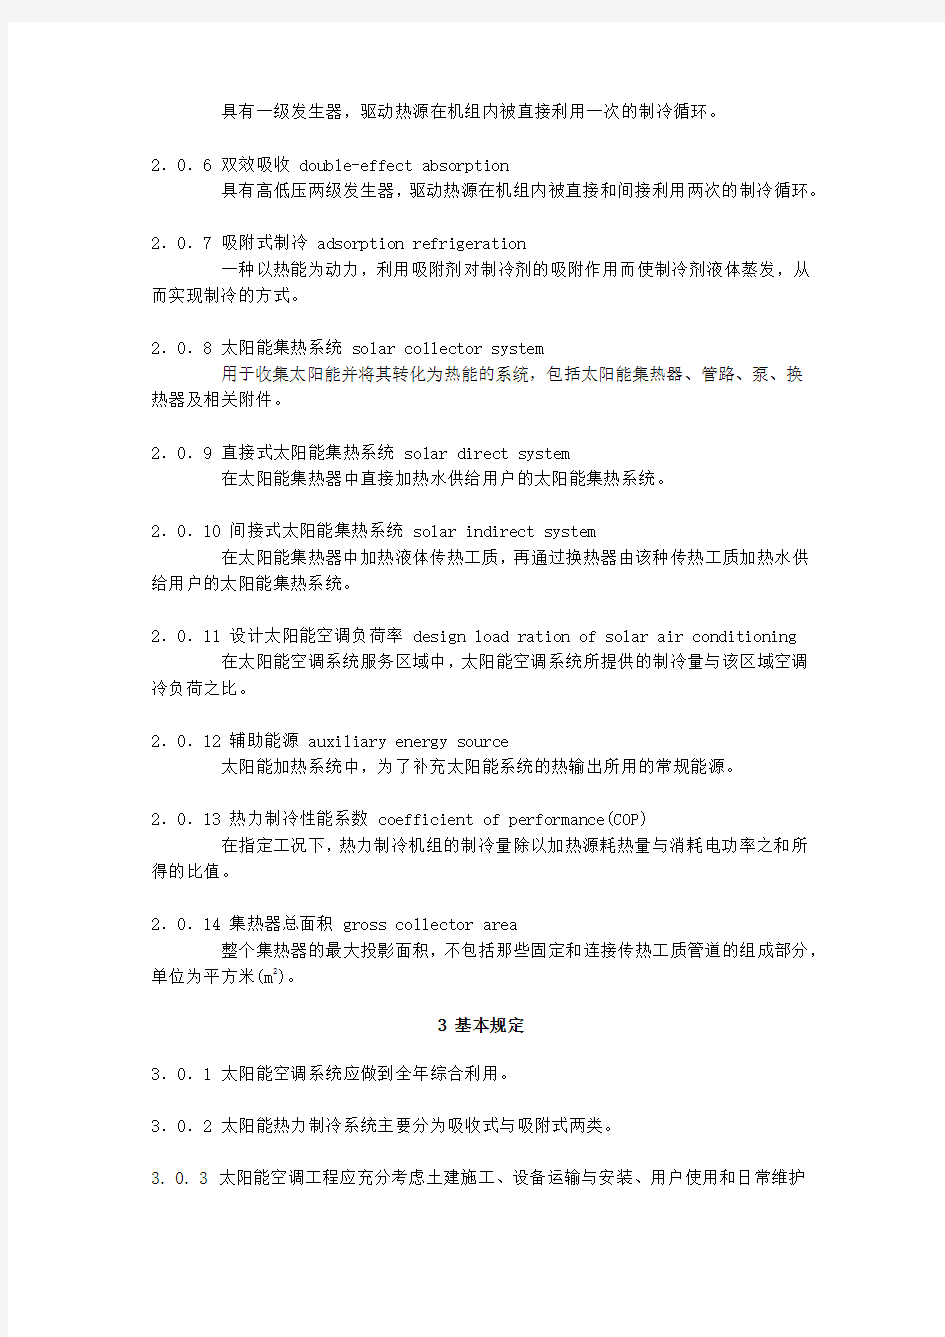 中华人民共和国国家标准GB 50787-2012